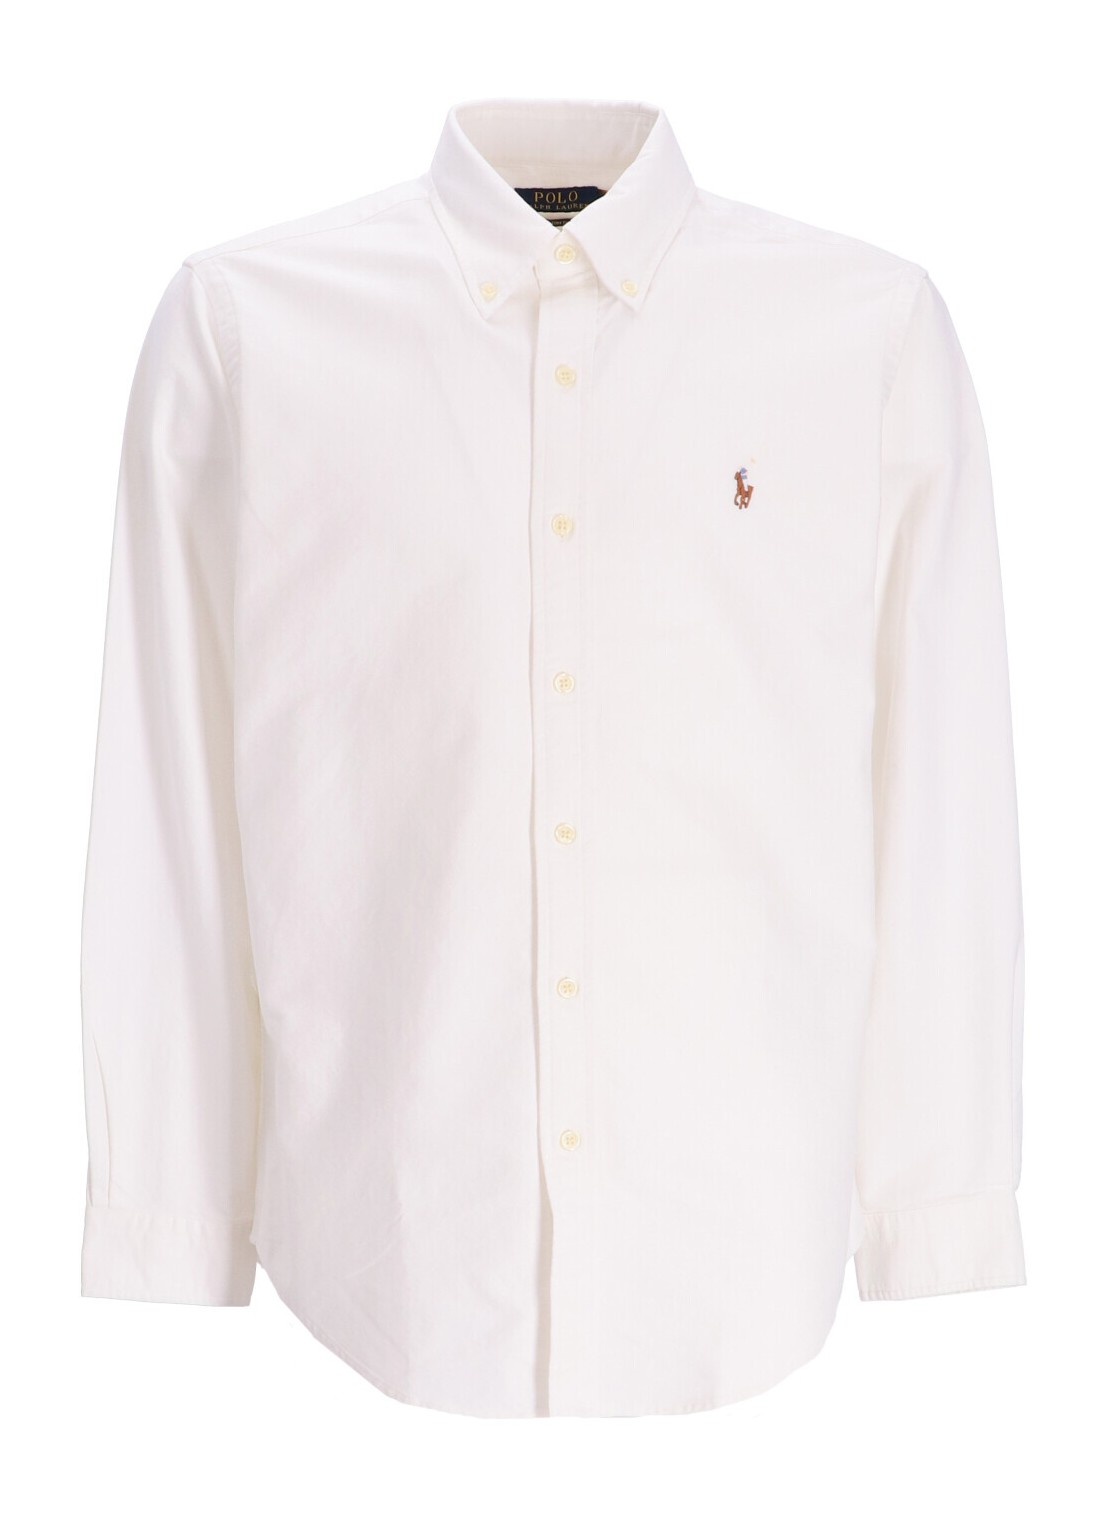 Camiseria polo ralph lauren shirt man cubdppcs-long sleeve-sport shirt 710792041001 white talla XXL
